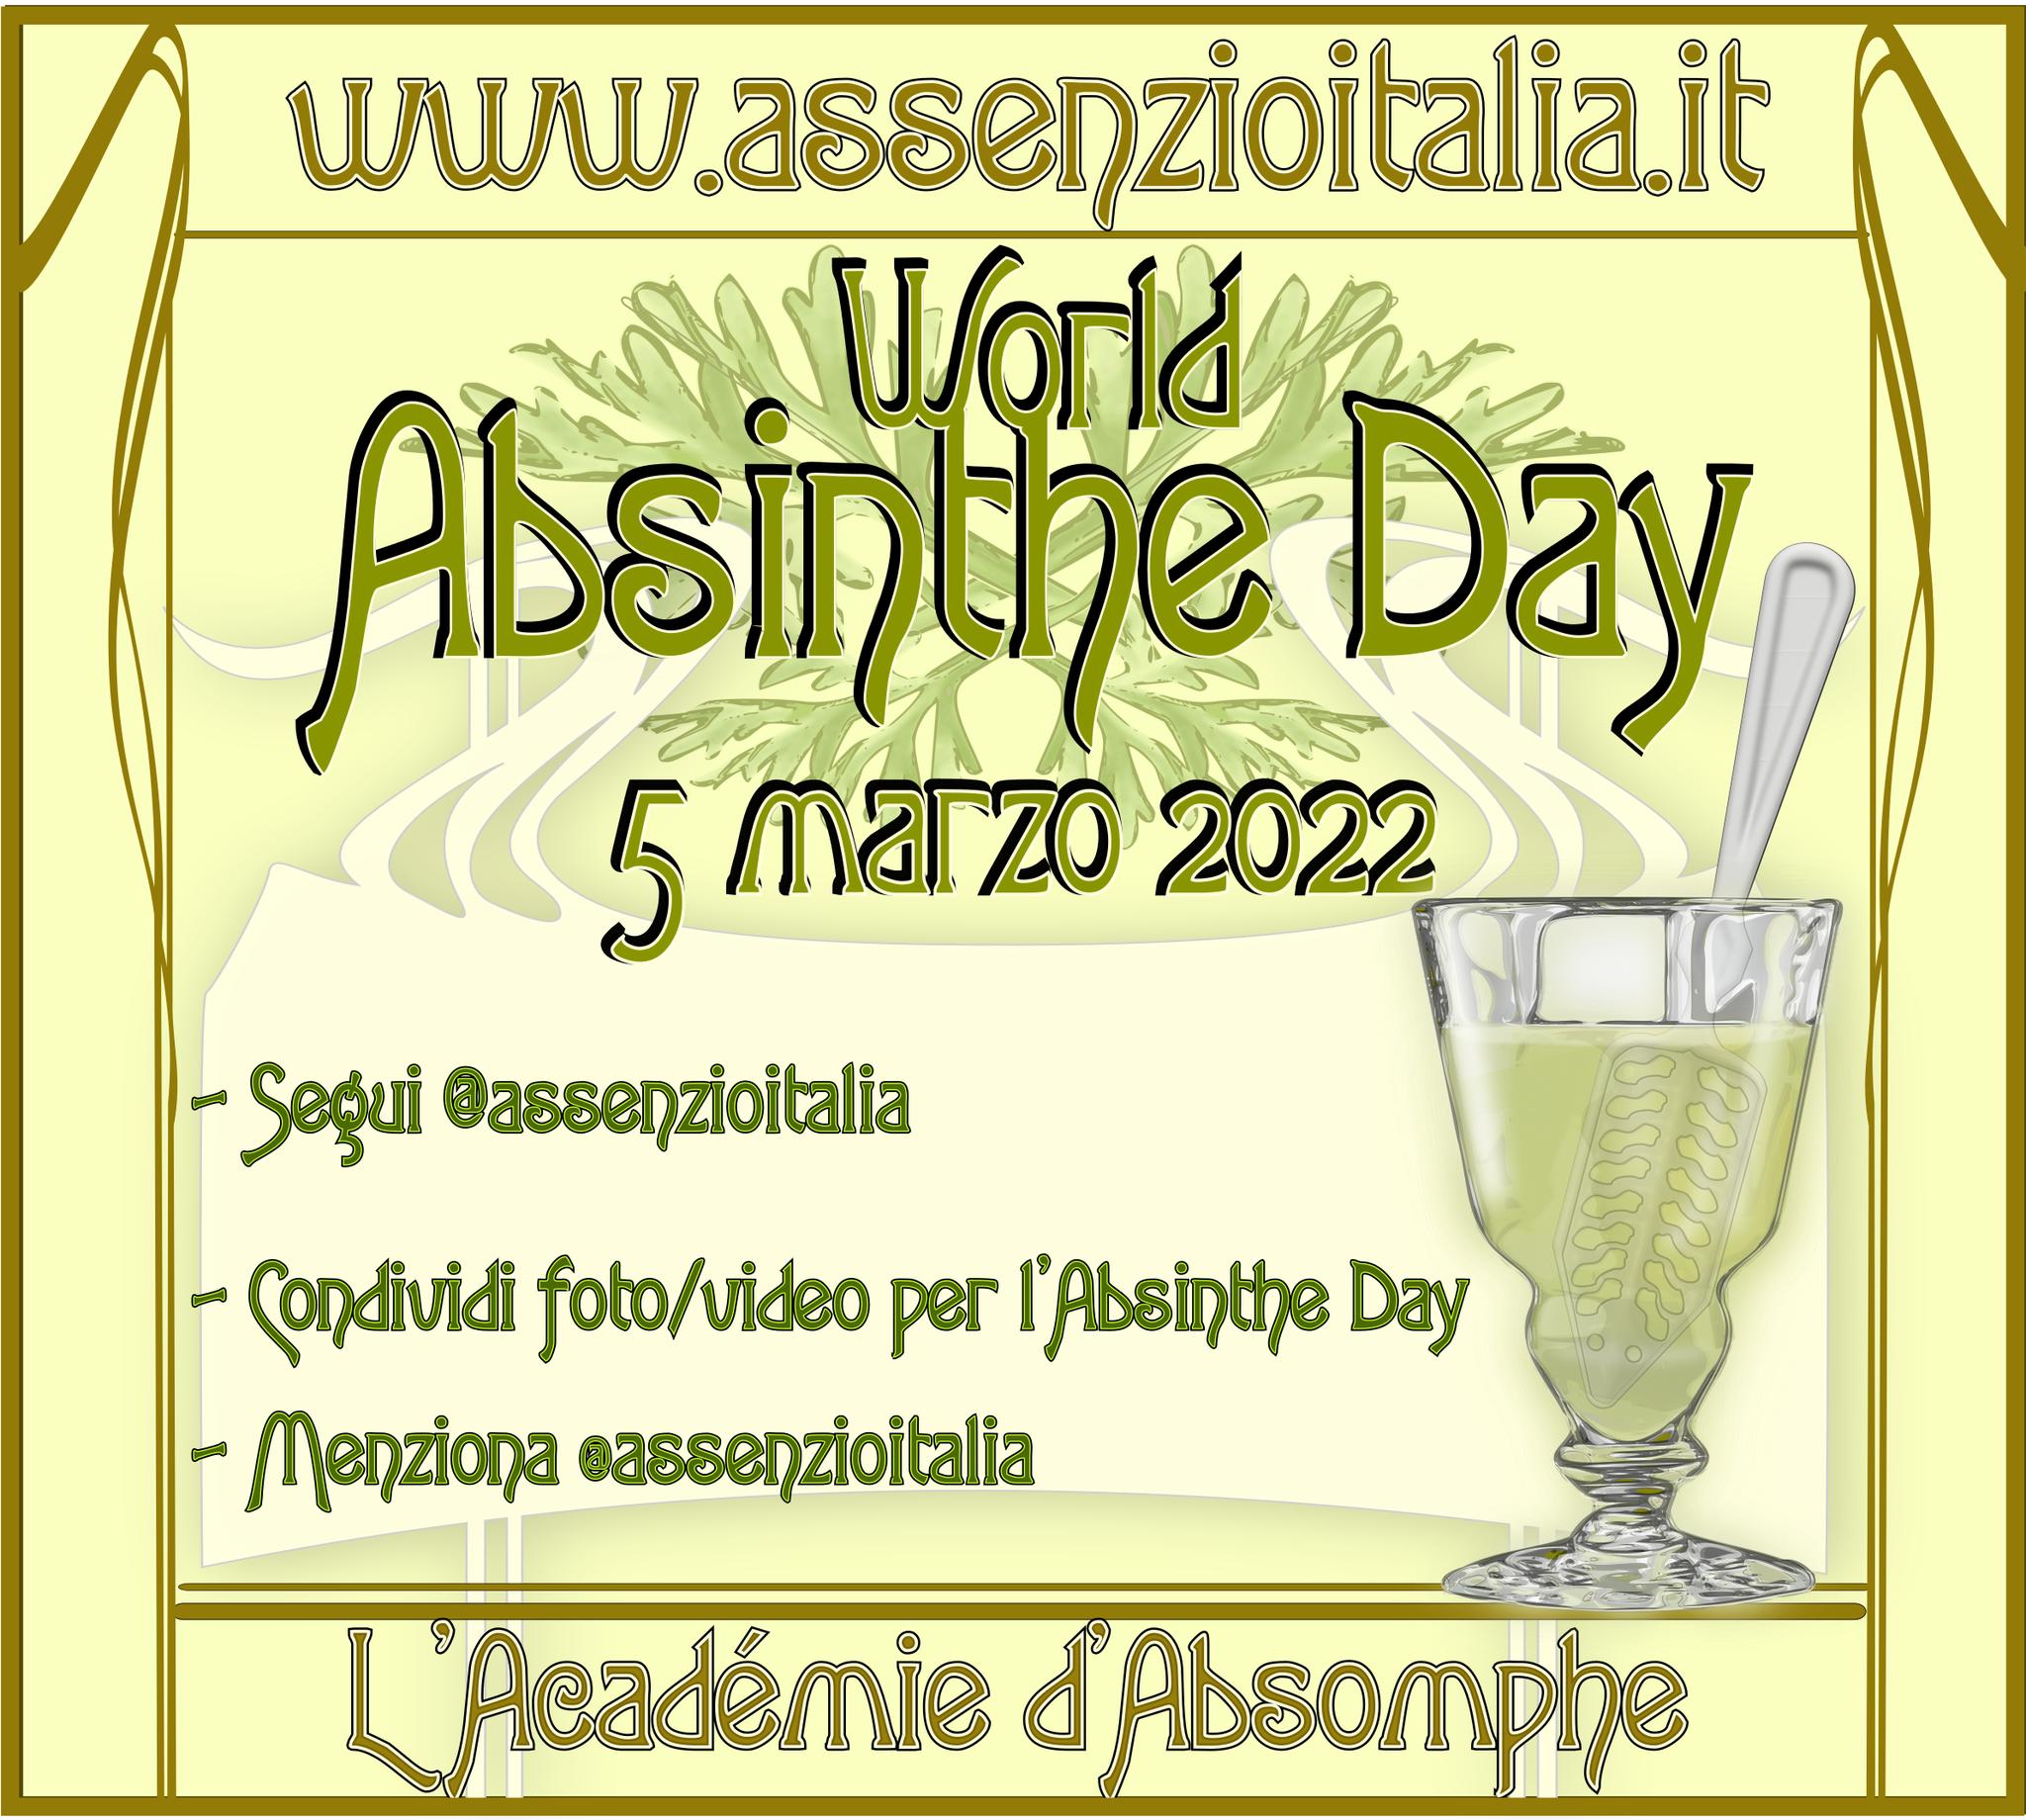 Absinte day - Giornata dell'assenzio 2022 